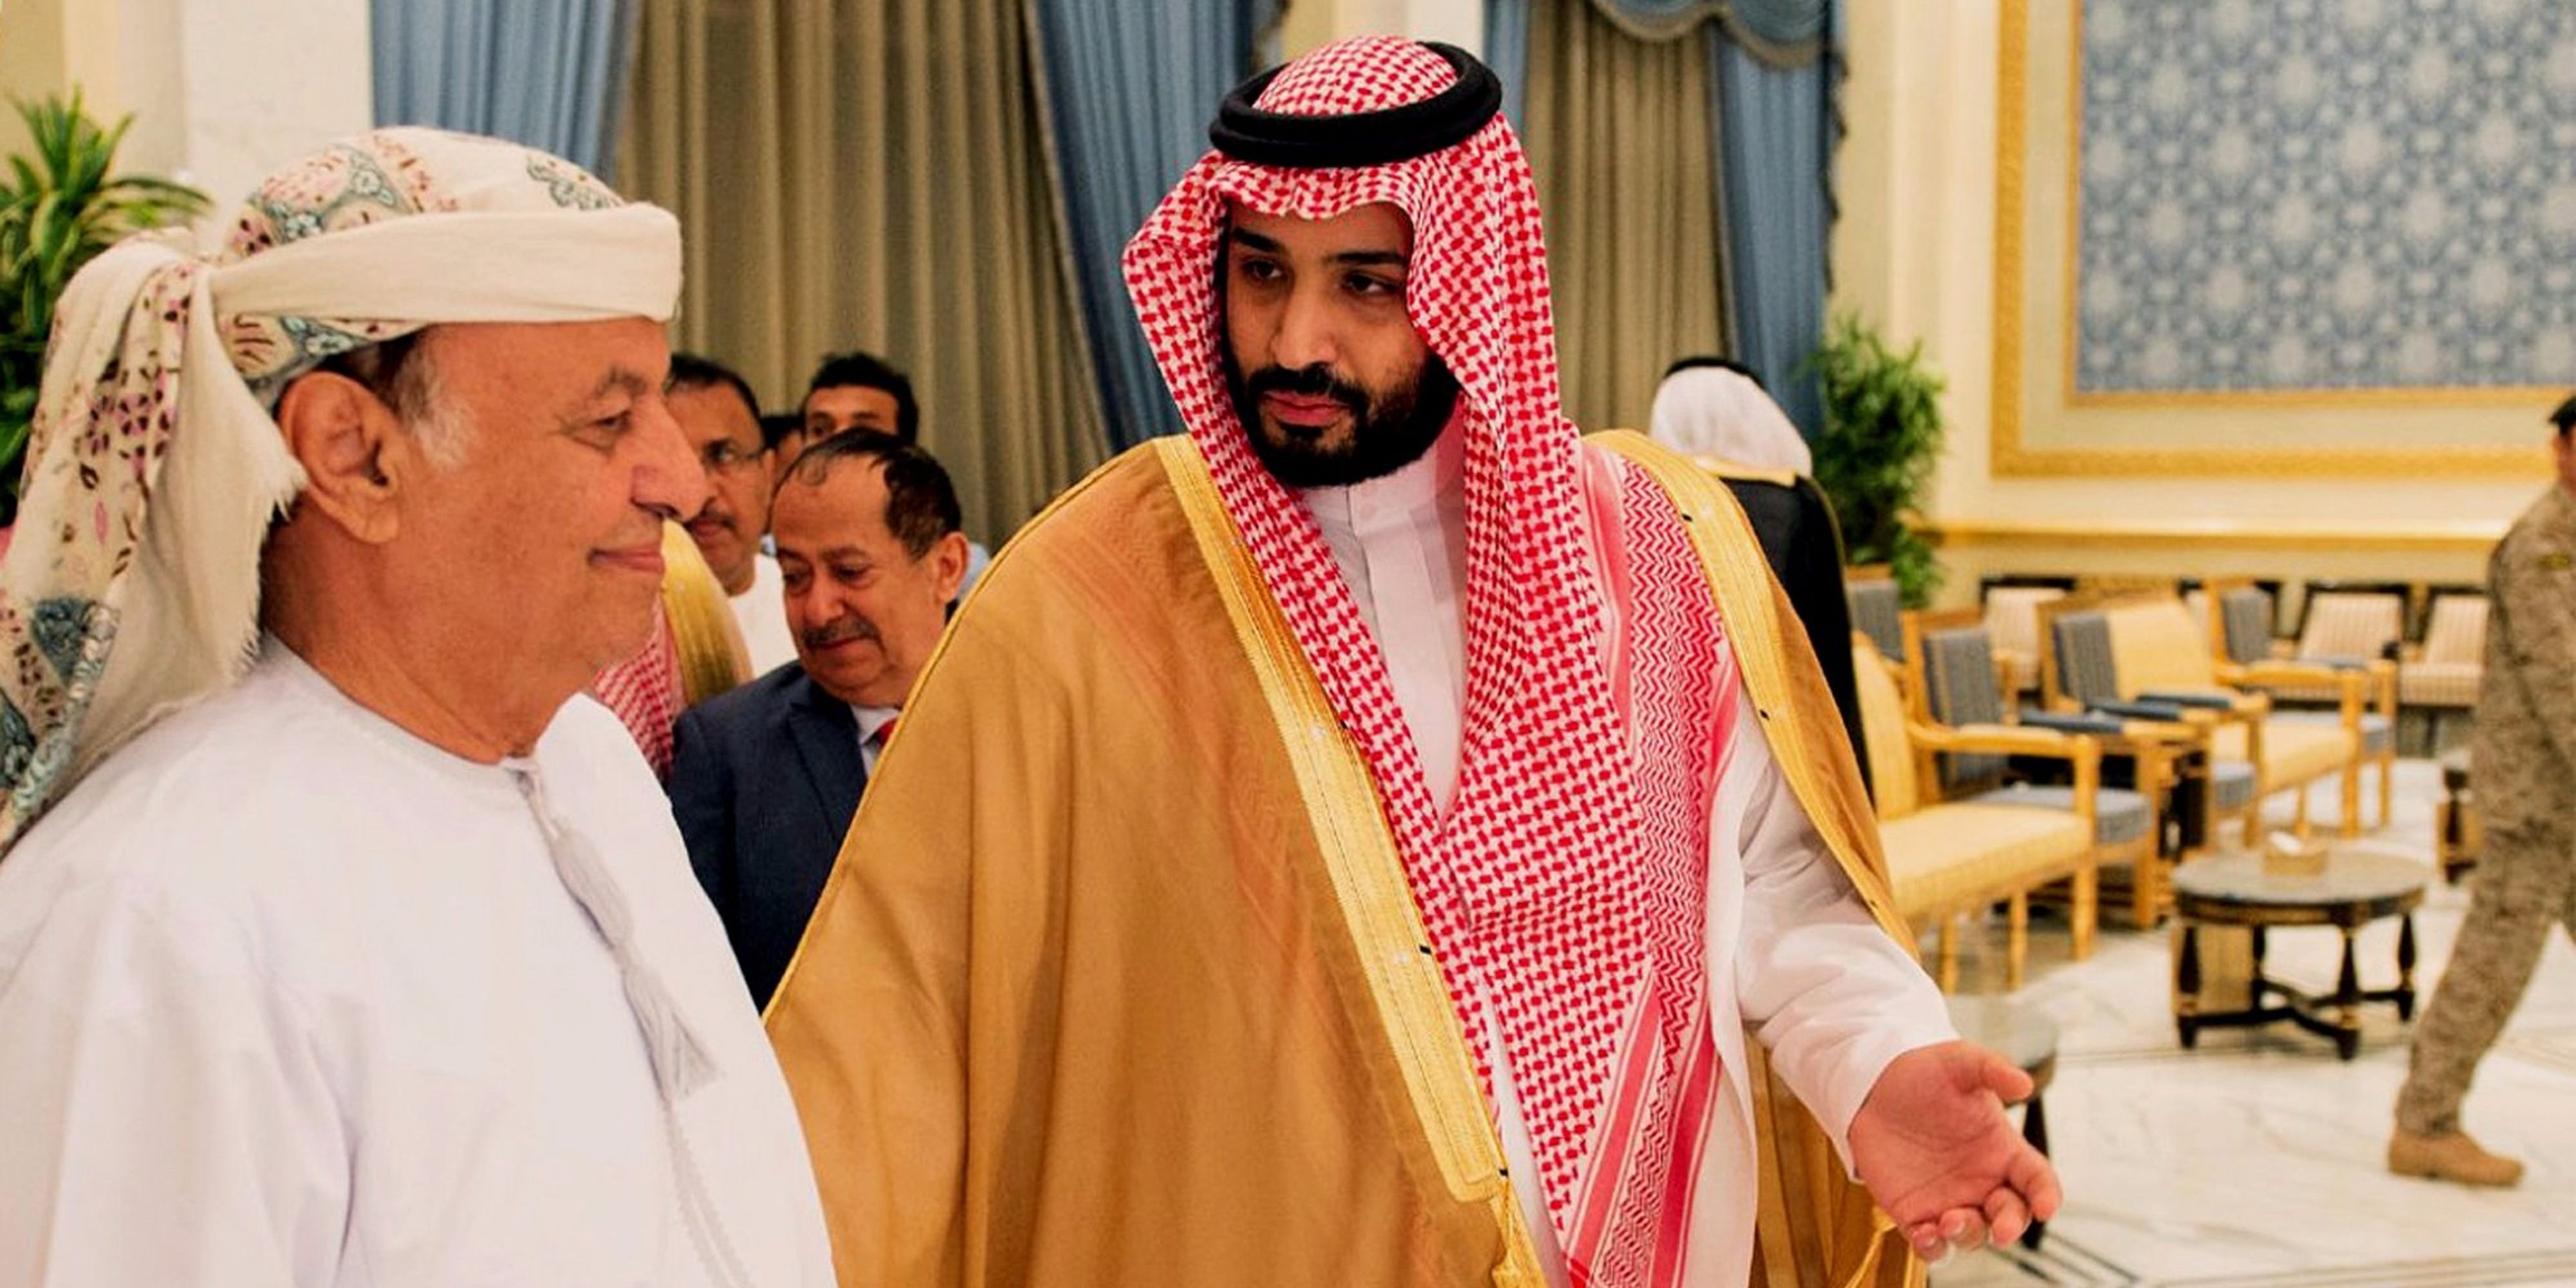 El presidente de Yemen Abed Rabbo Mansour, a la izquierda, pasea junto al ministro de defensa saudí, Mohammed bin Salam, a la llegada de Hadi en Riyadh, Arabia Saudi, el 26 de marzo de 2015.